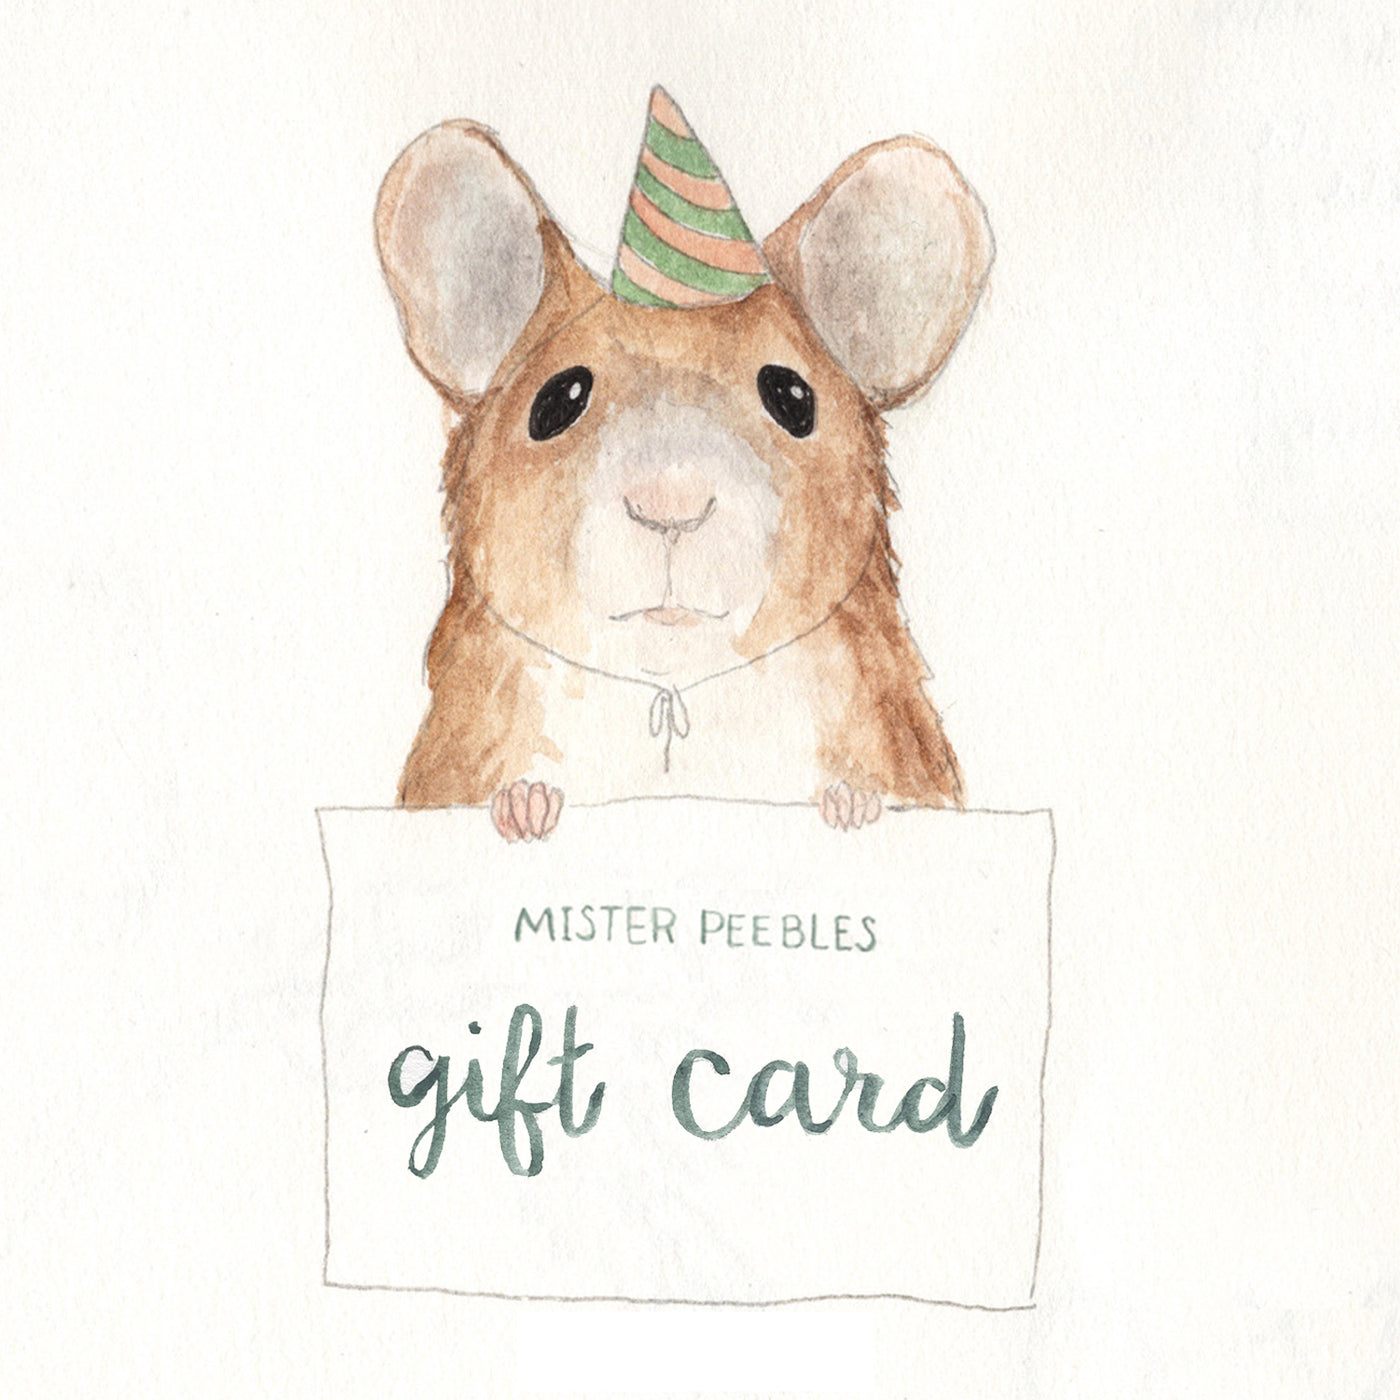 Mister Peebles Gift Card